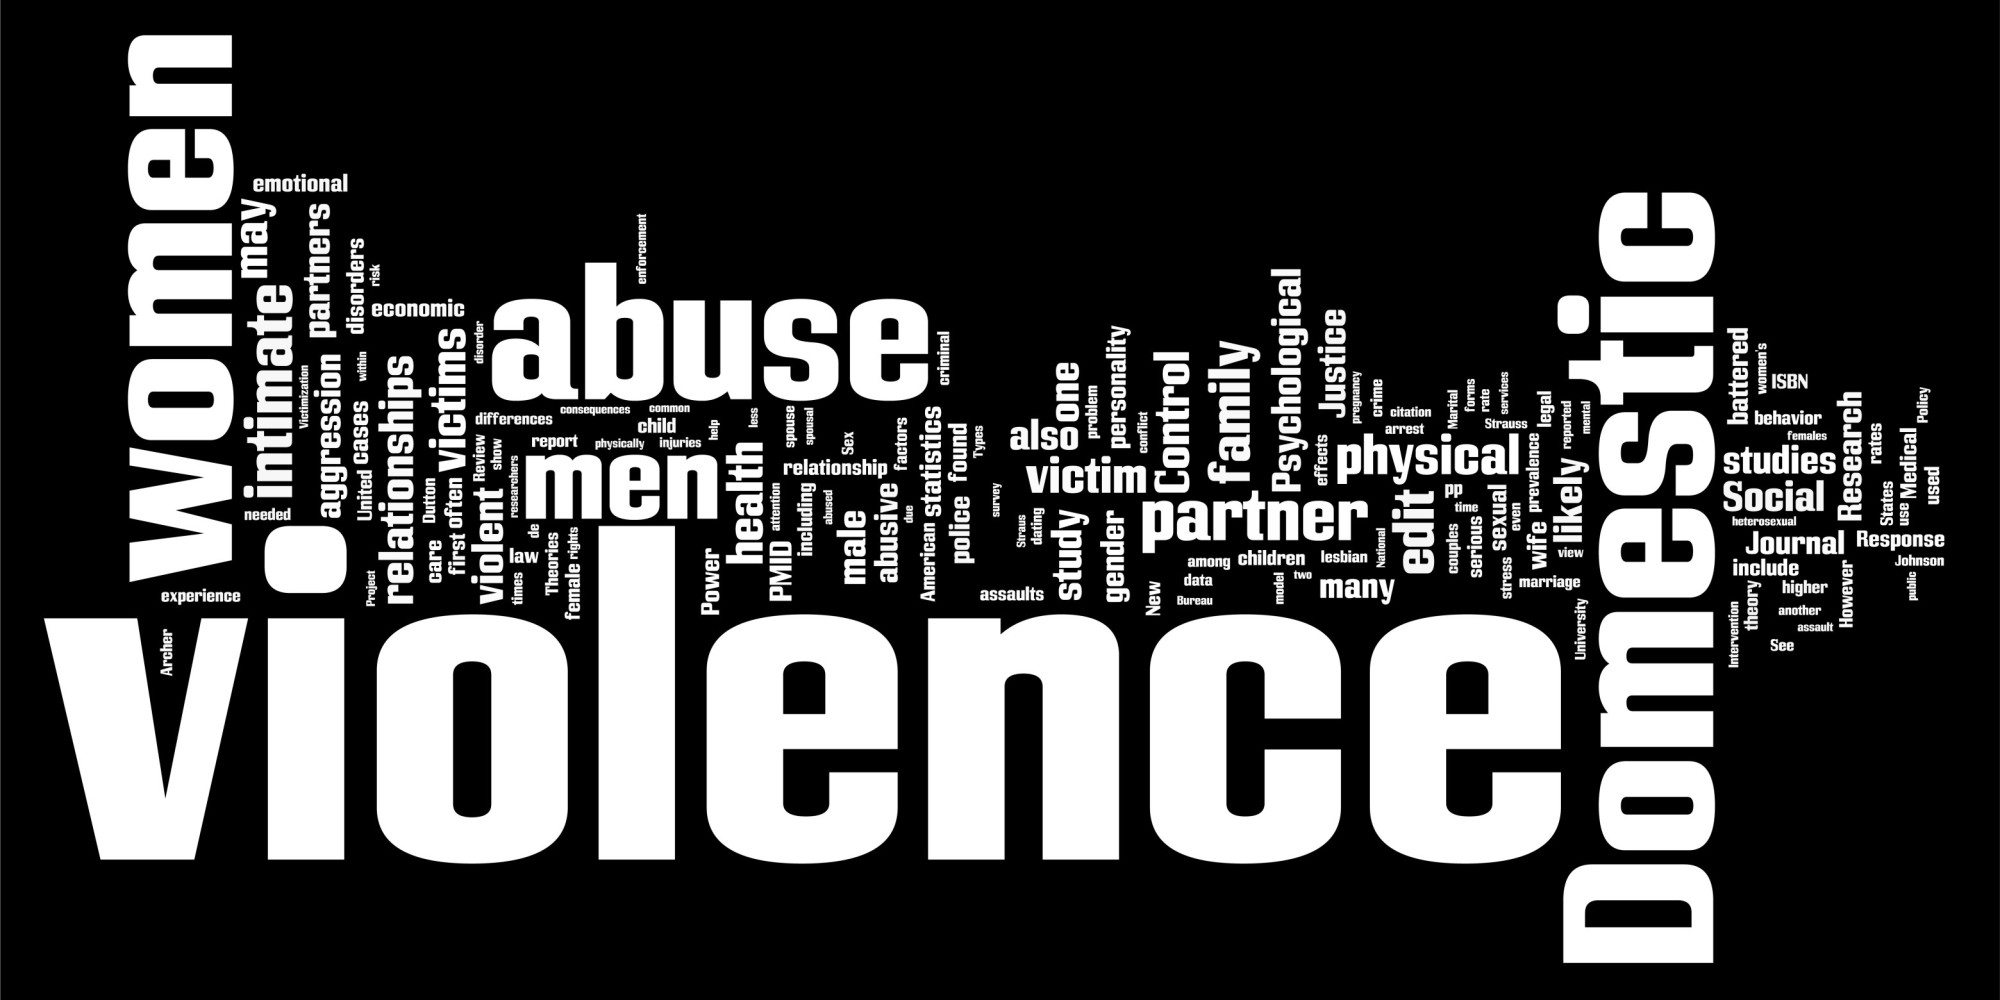 Family violence essay topics